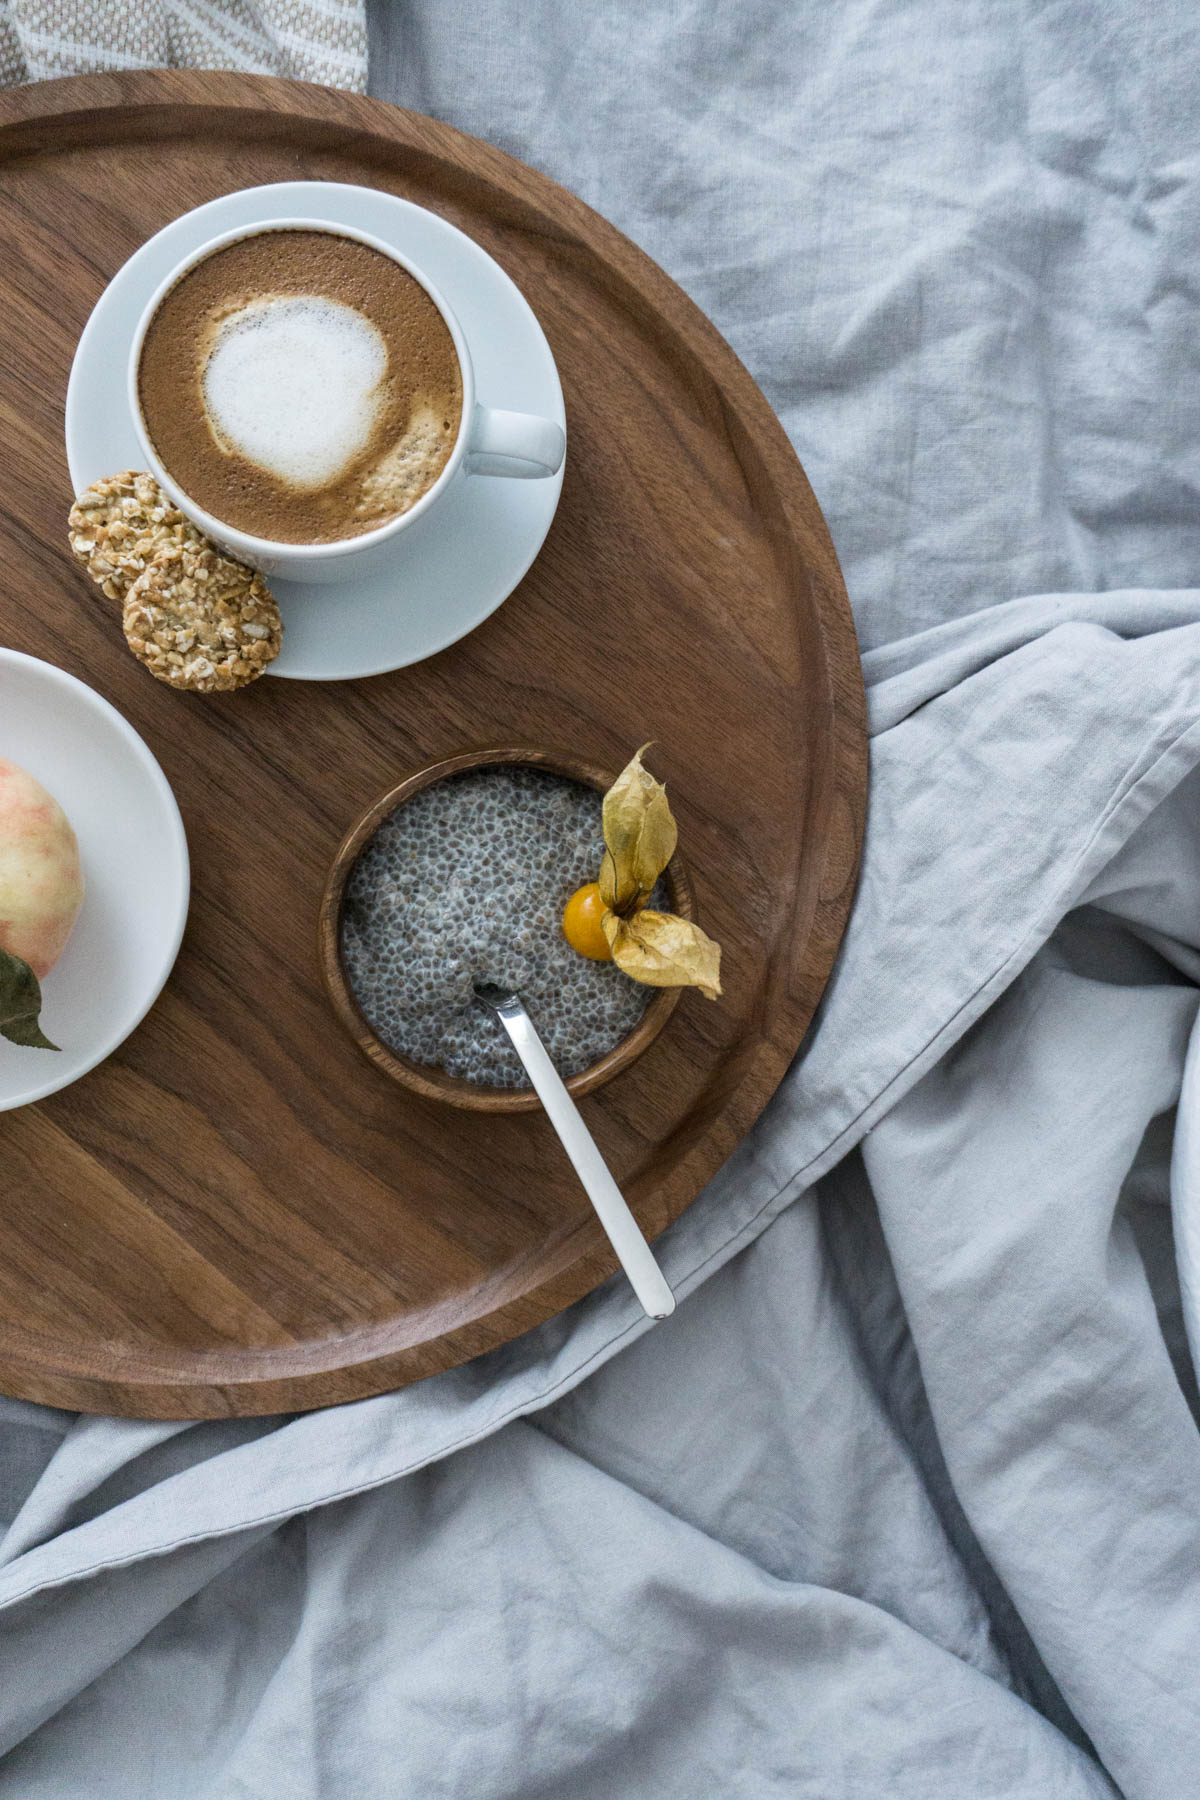 Breakfast in Bed / Scandinavian Interior / Weekend Vibes / RG Daily Blog